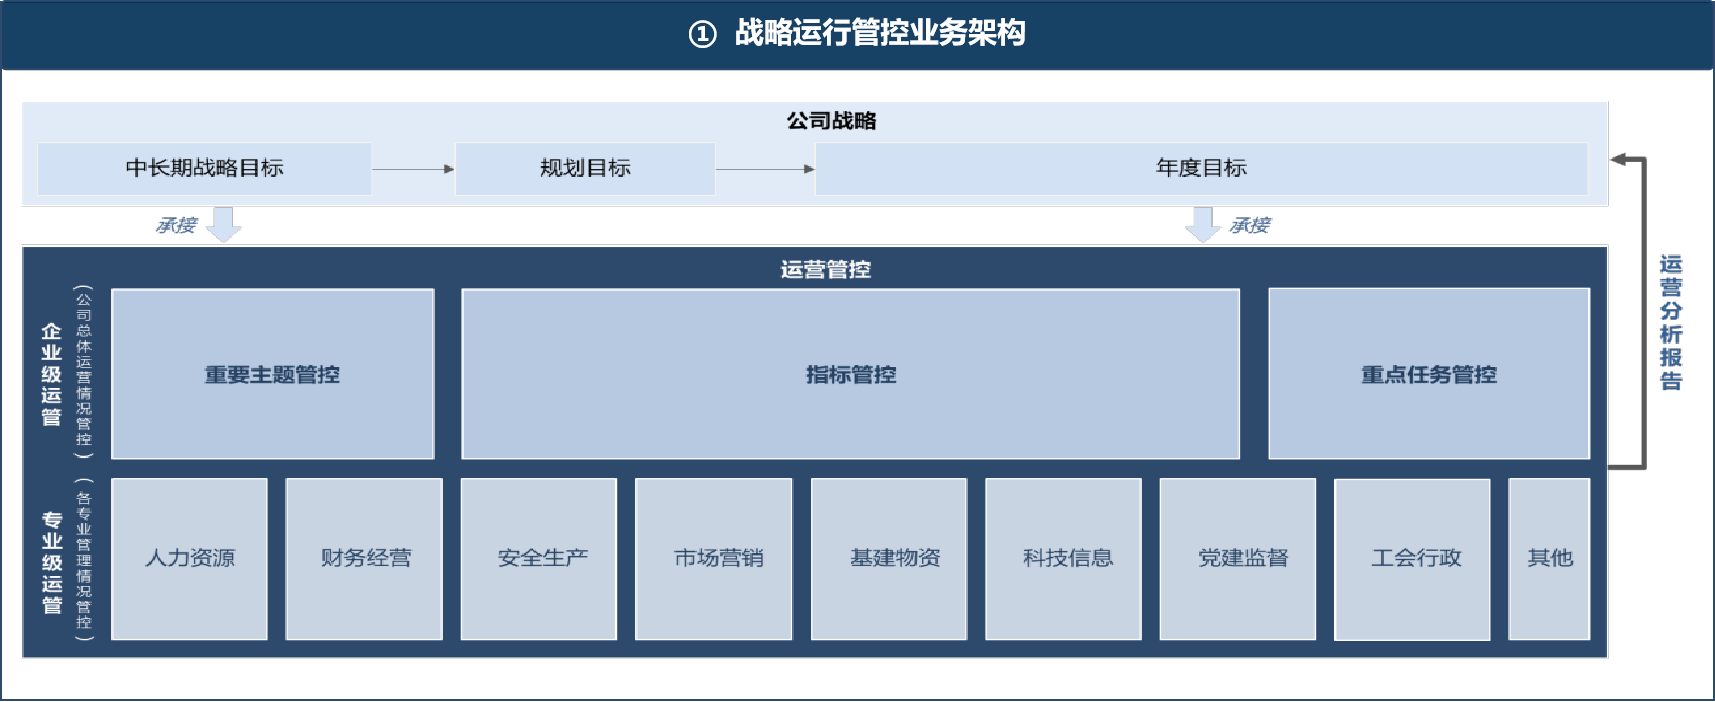 图1 中国南方电网运营管控业务架构